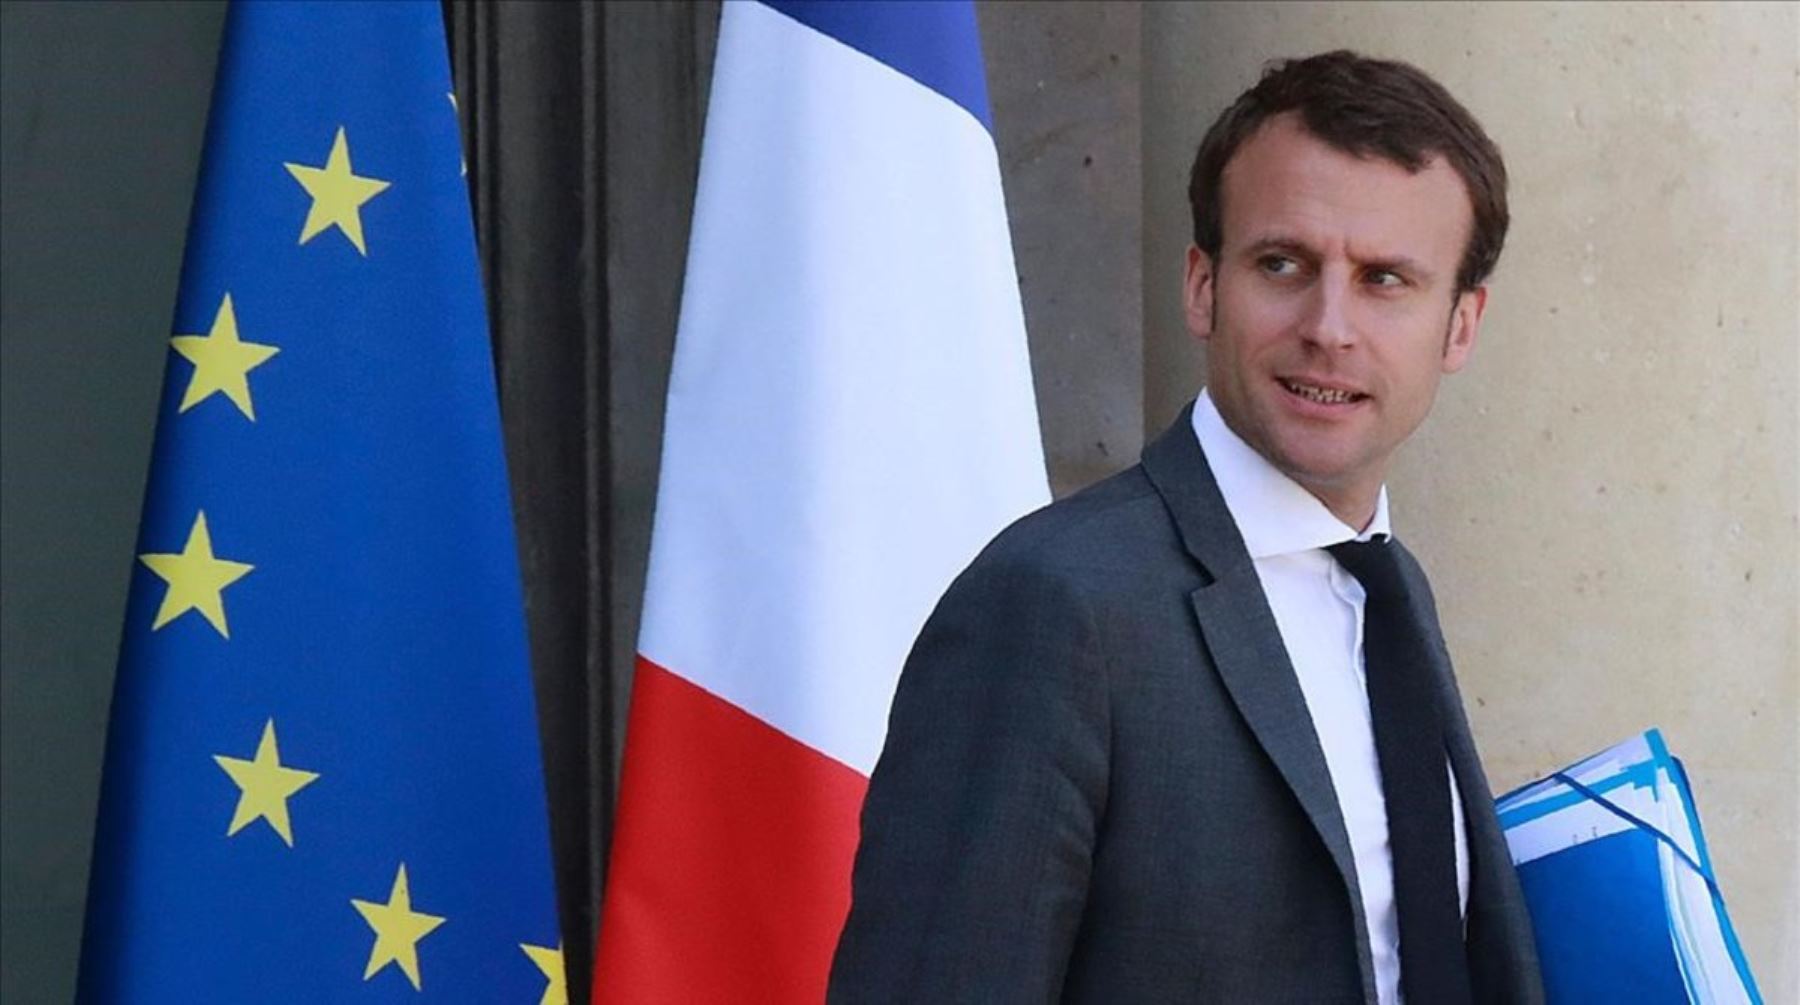 Macron gana las elecciones de Francia a Le Pen